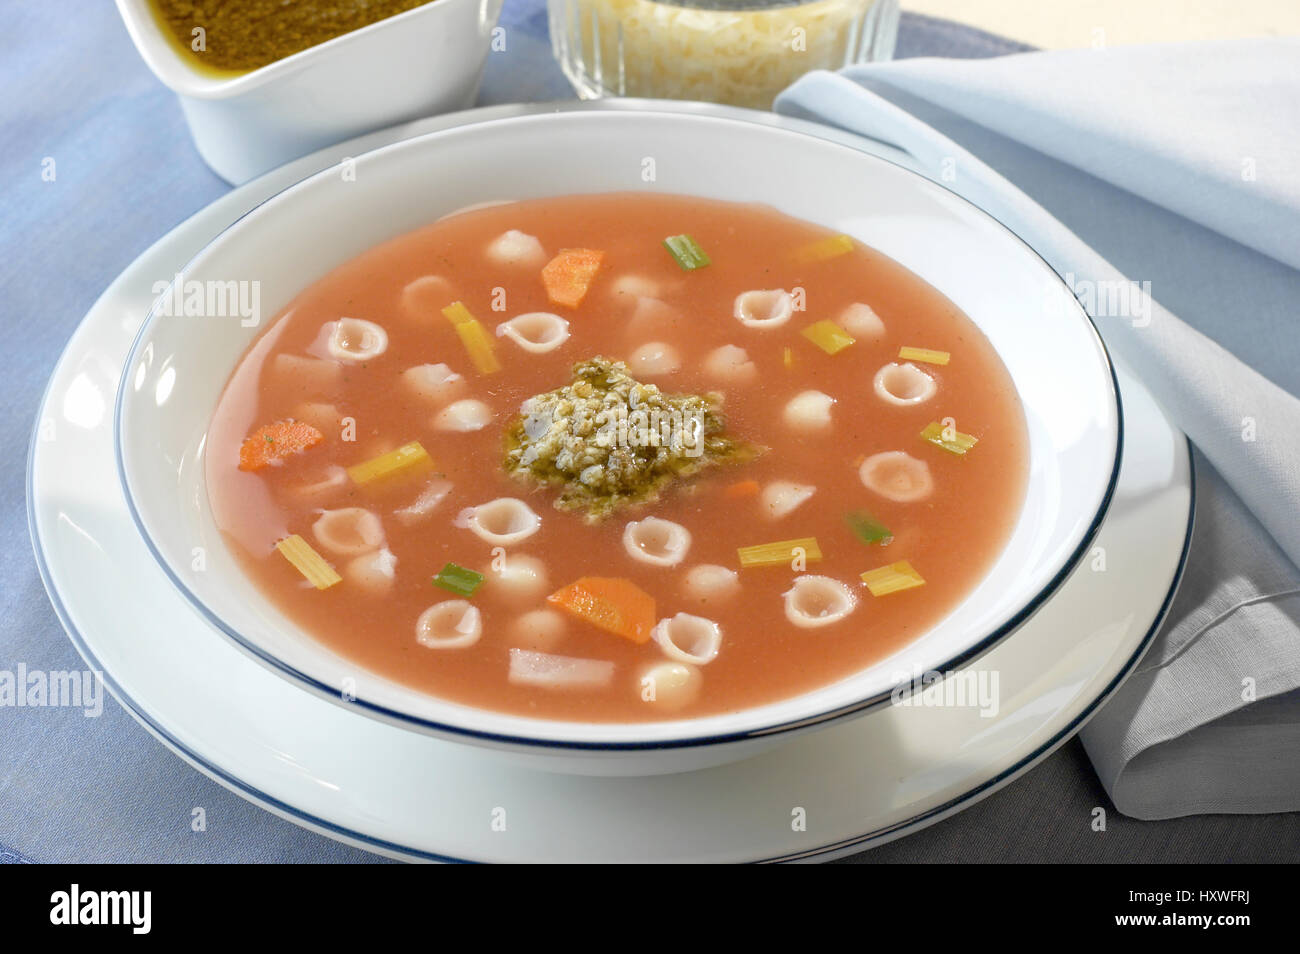 en plato redondo sopa de pasta con verduras y salsa de pesto Stock Photo